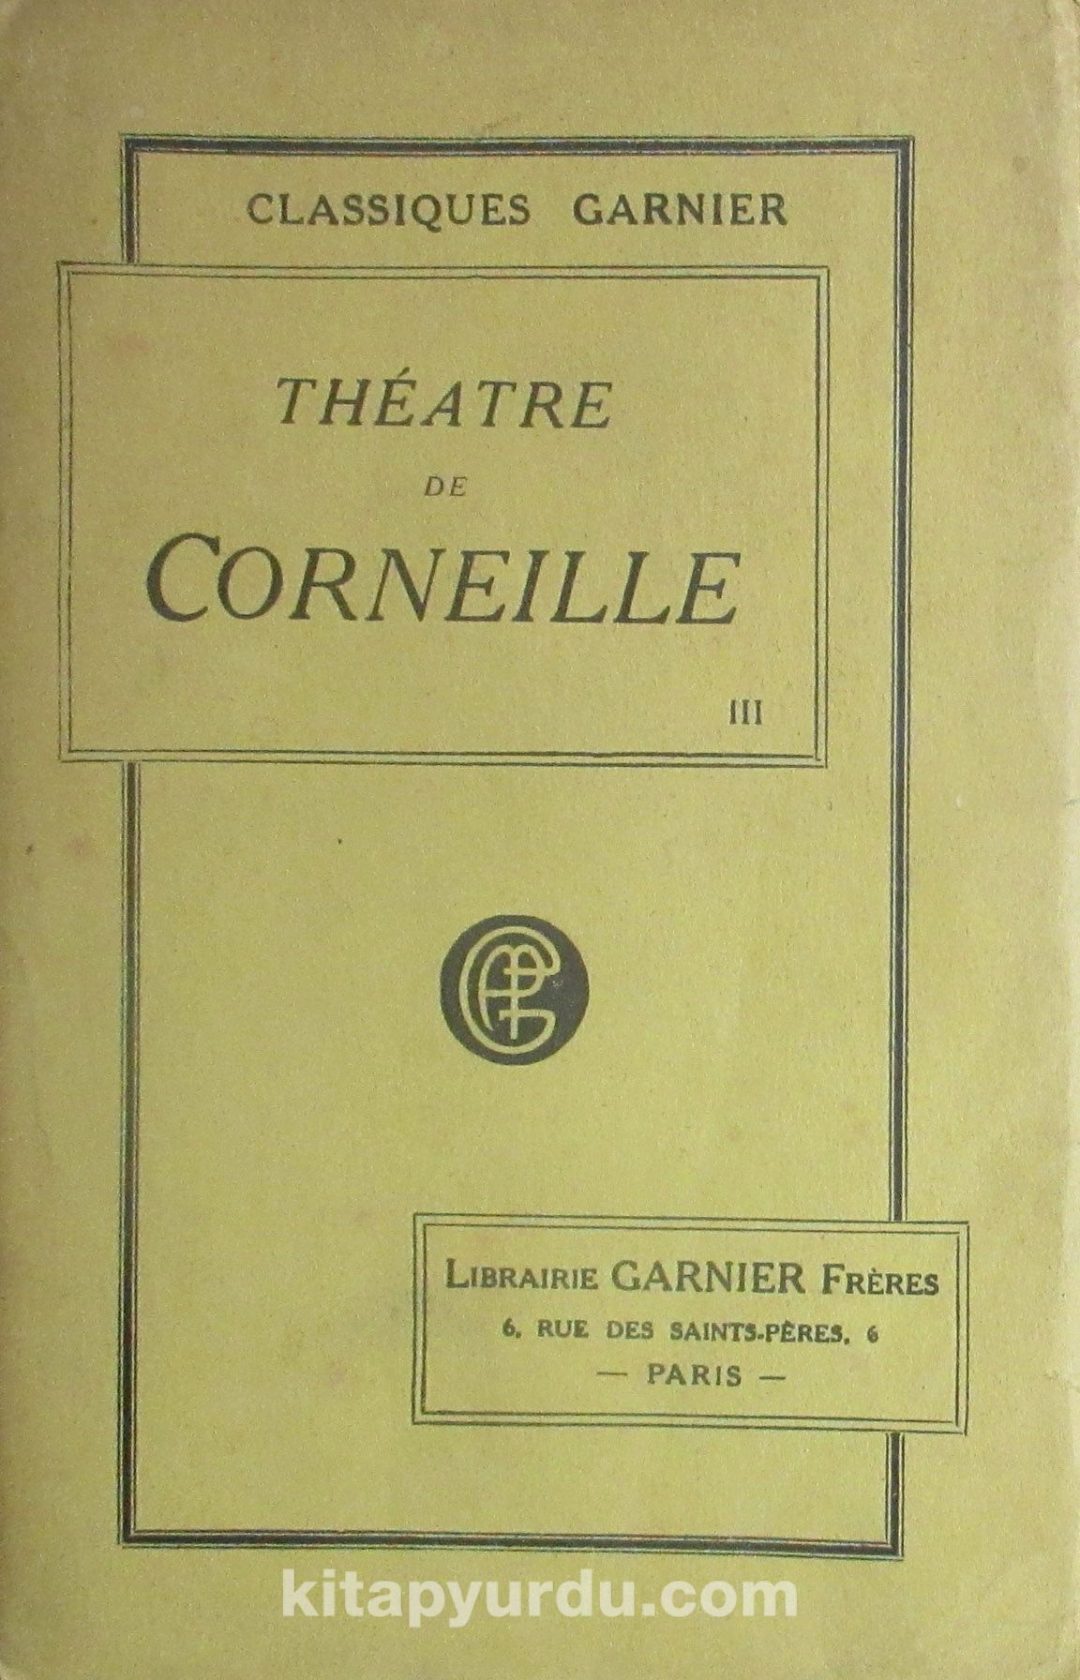 Theatre de Corneille (4-D-11)